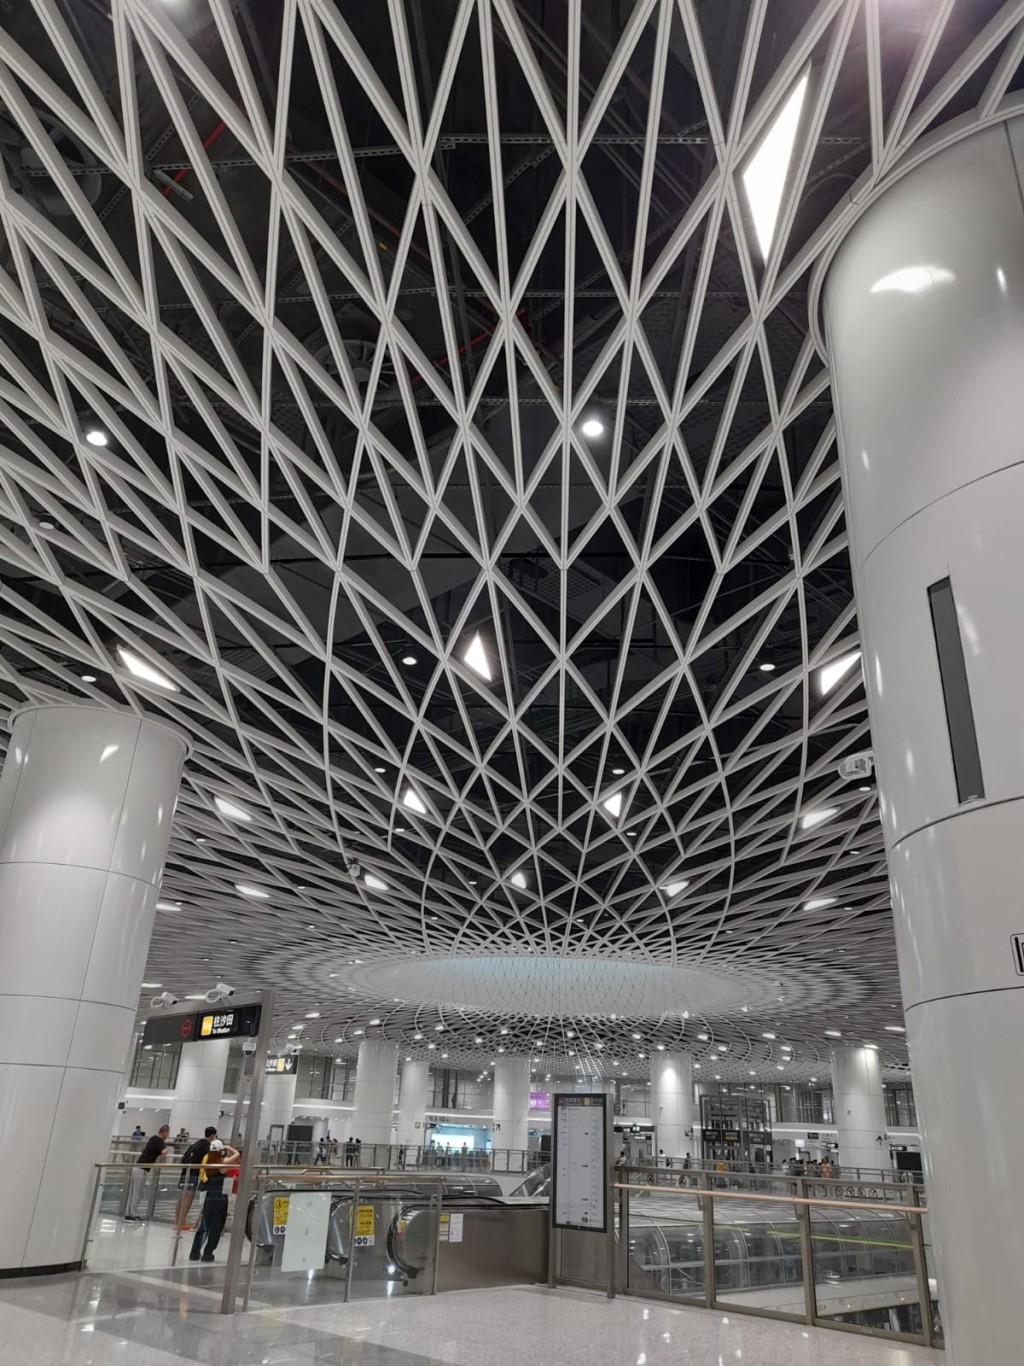 深圳地铁岗厦北站有深圳最美地铁站之称。